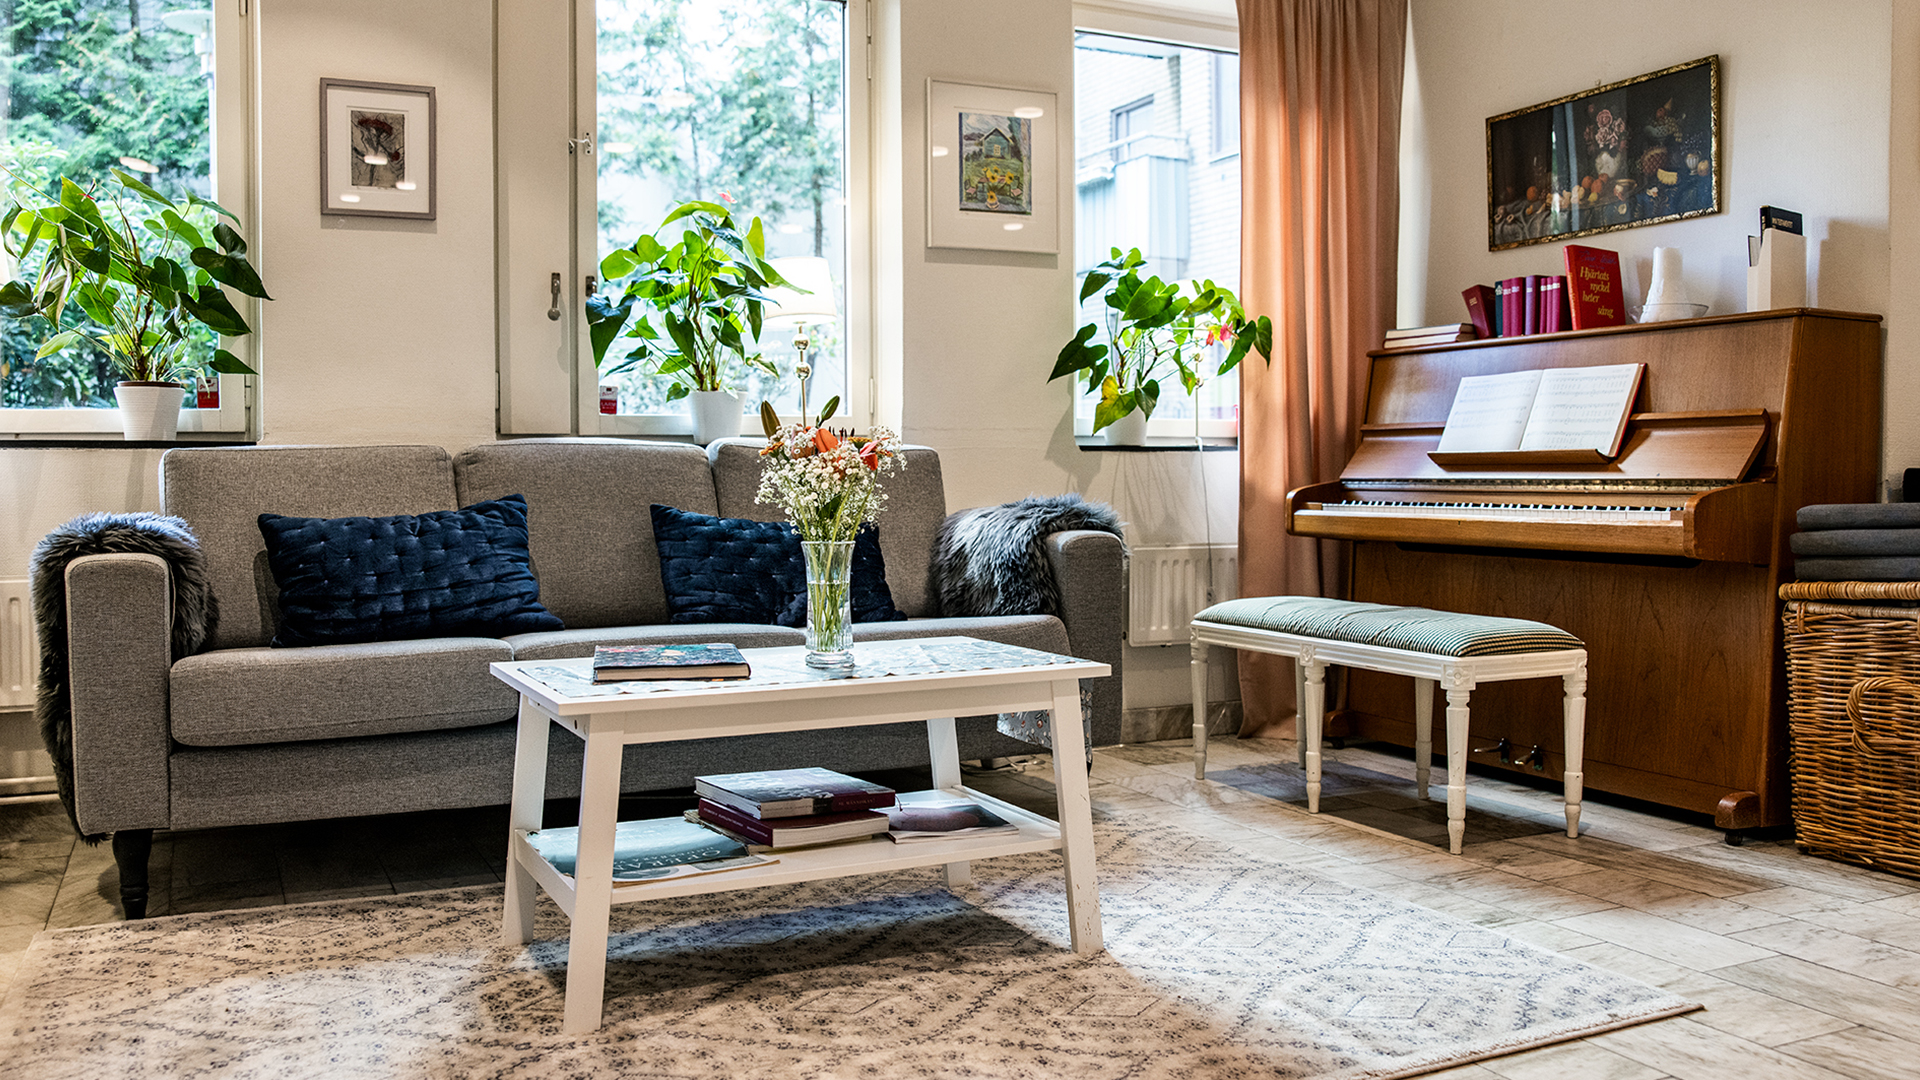 Linnégårdens gemensamma vardagsrum med grå soffa och ett piano